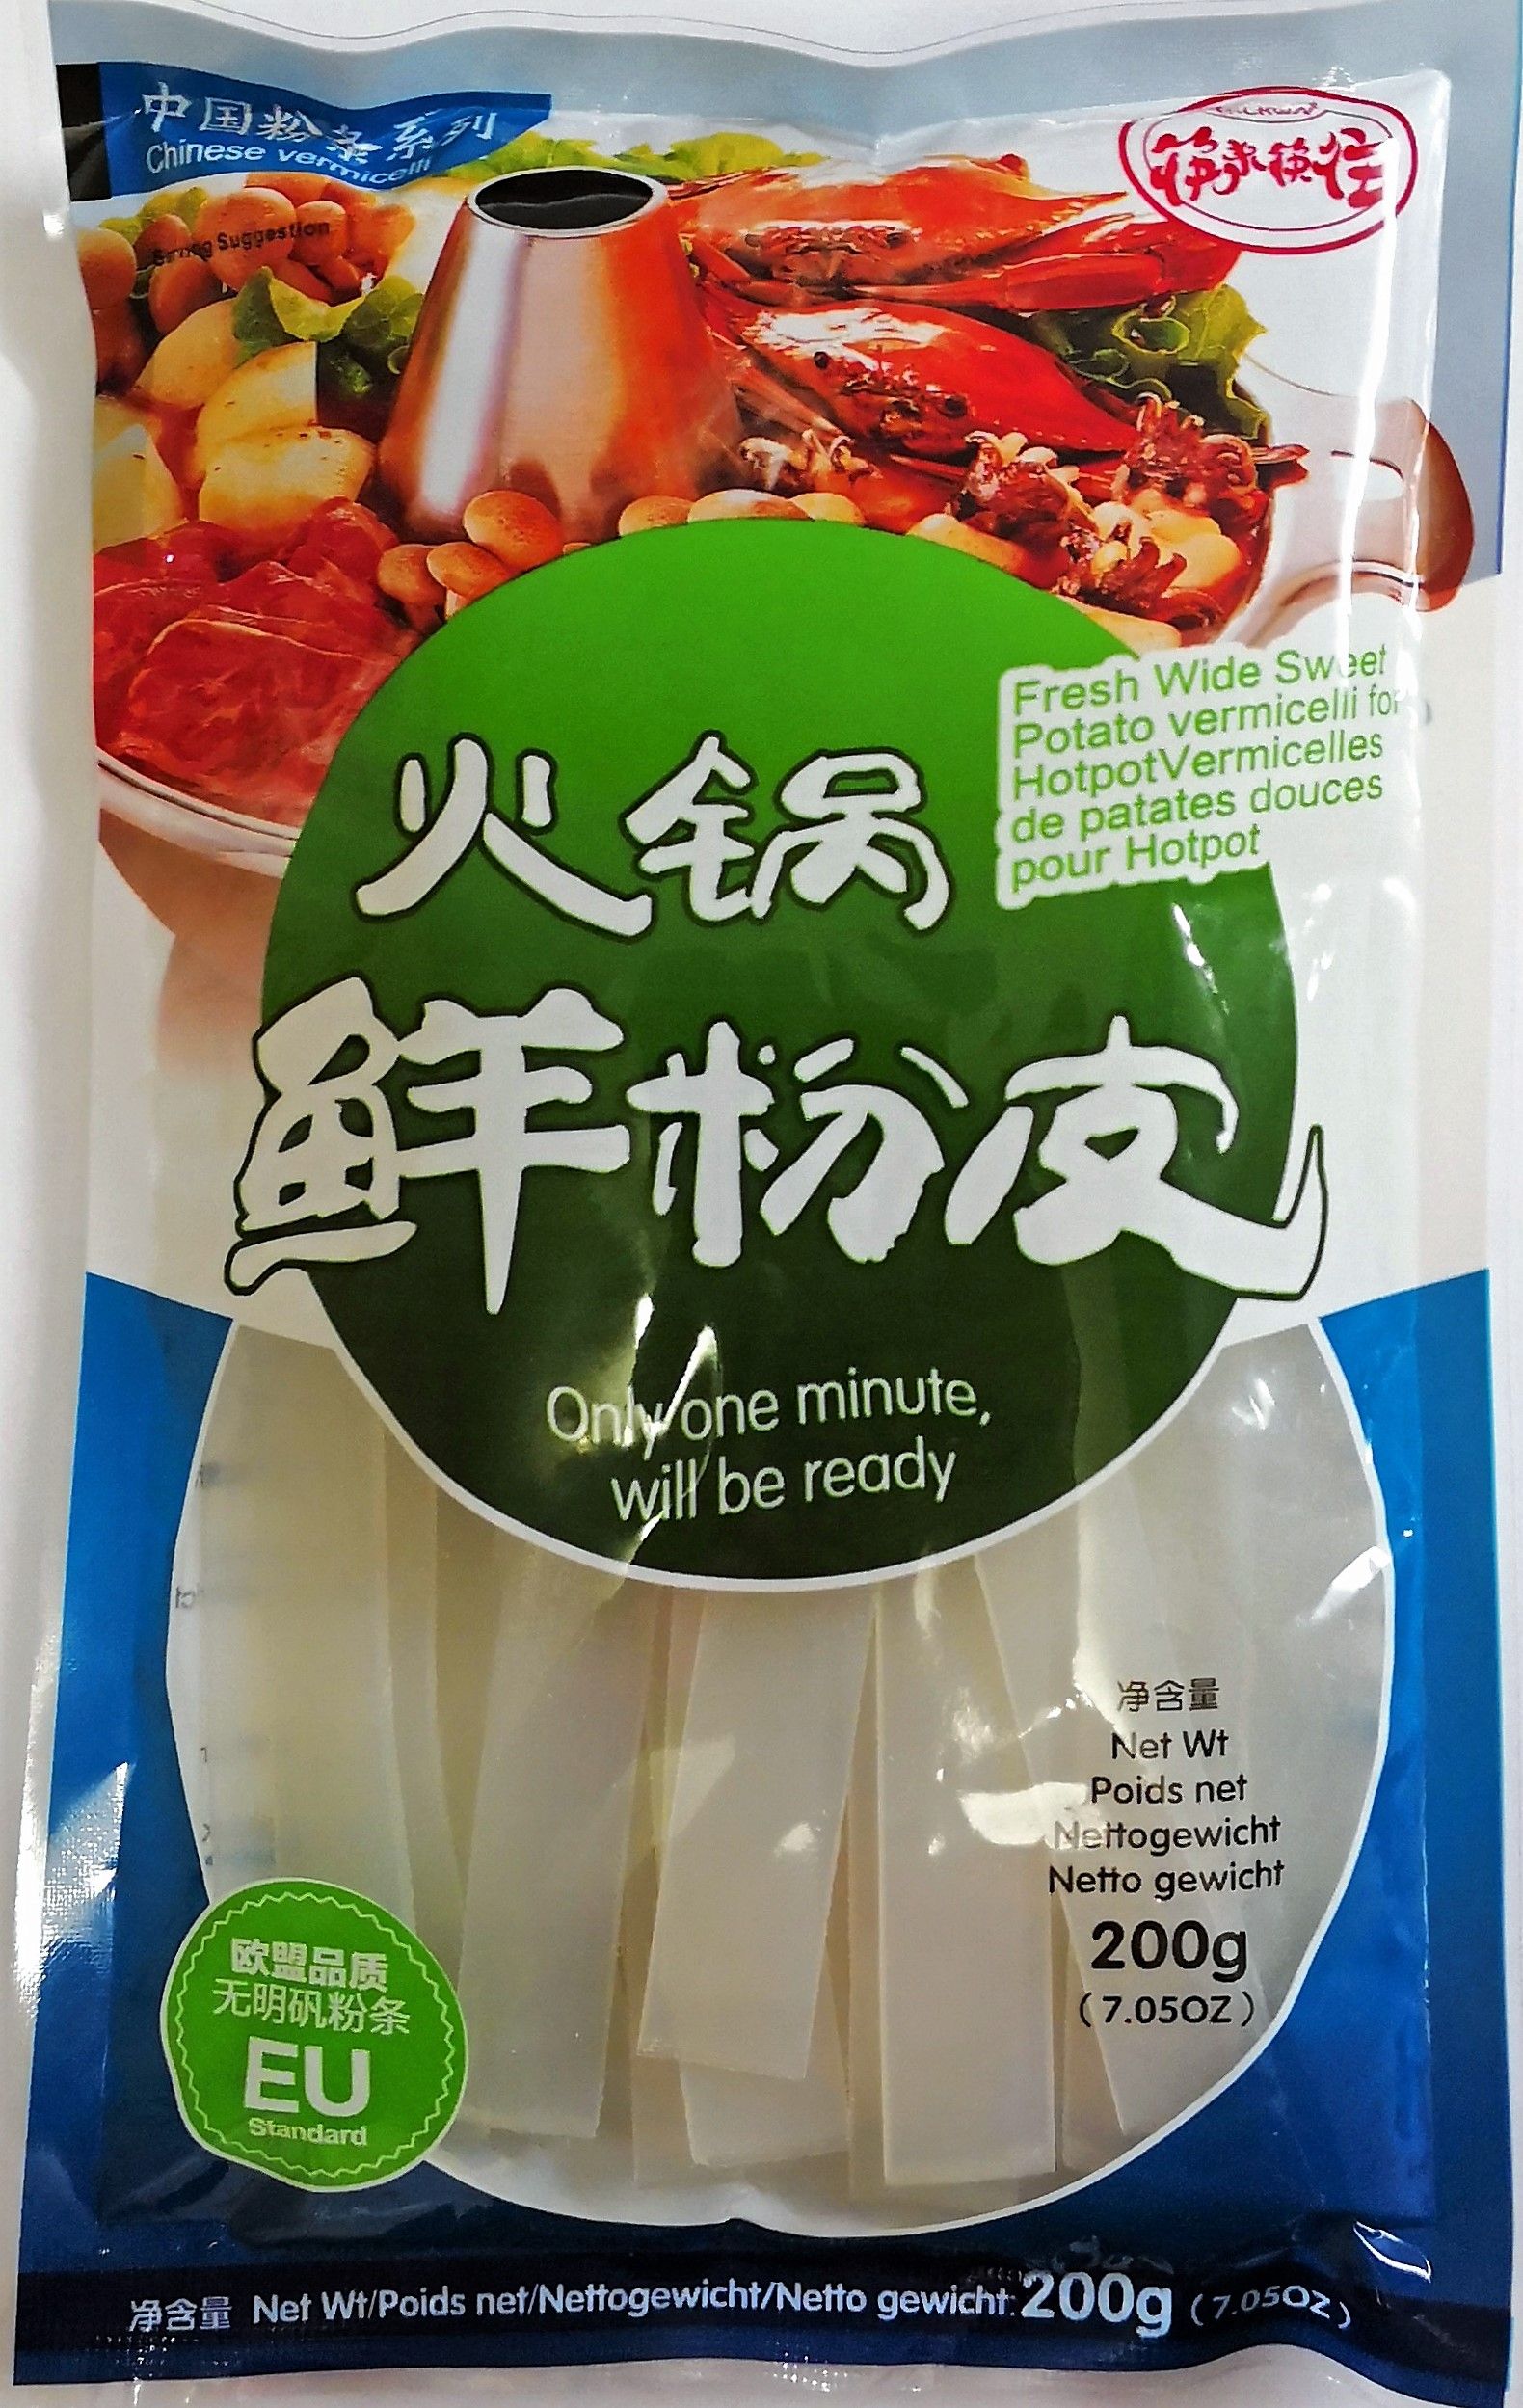 筷来筷往【火锅鲜粉皮/宽粉】无需泡发鲜宽粉条 只需煮1分钟 200g